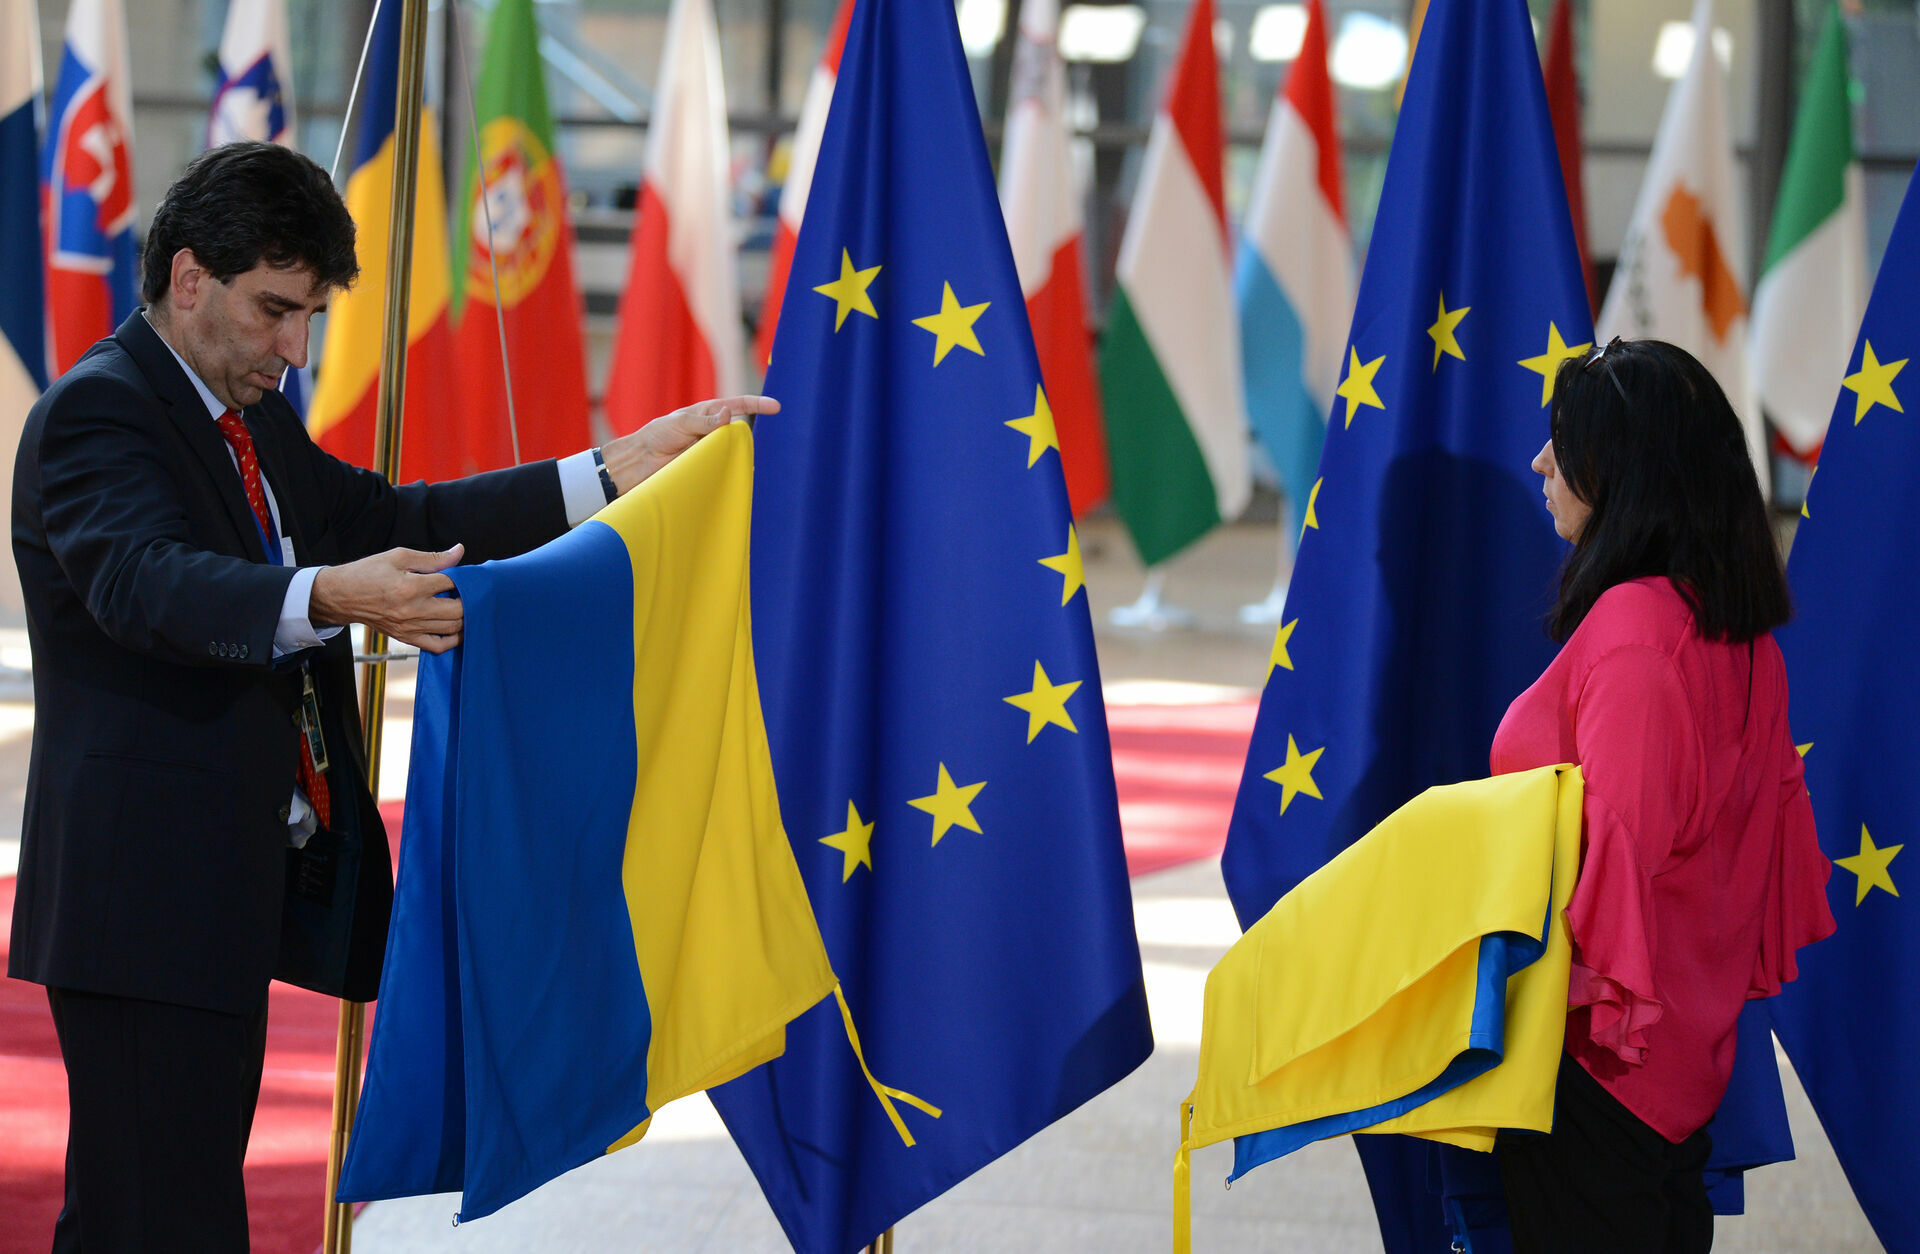 Дания и Нидерланды выступили против наделения Украины статусом кандидата в ЕС